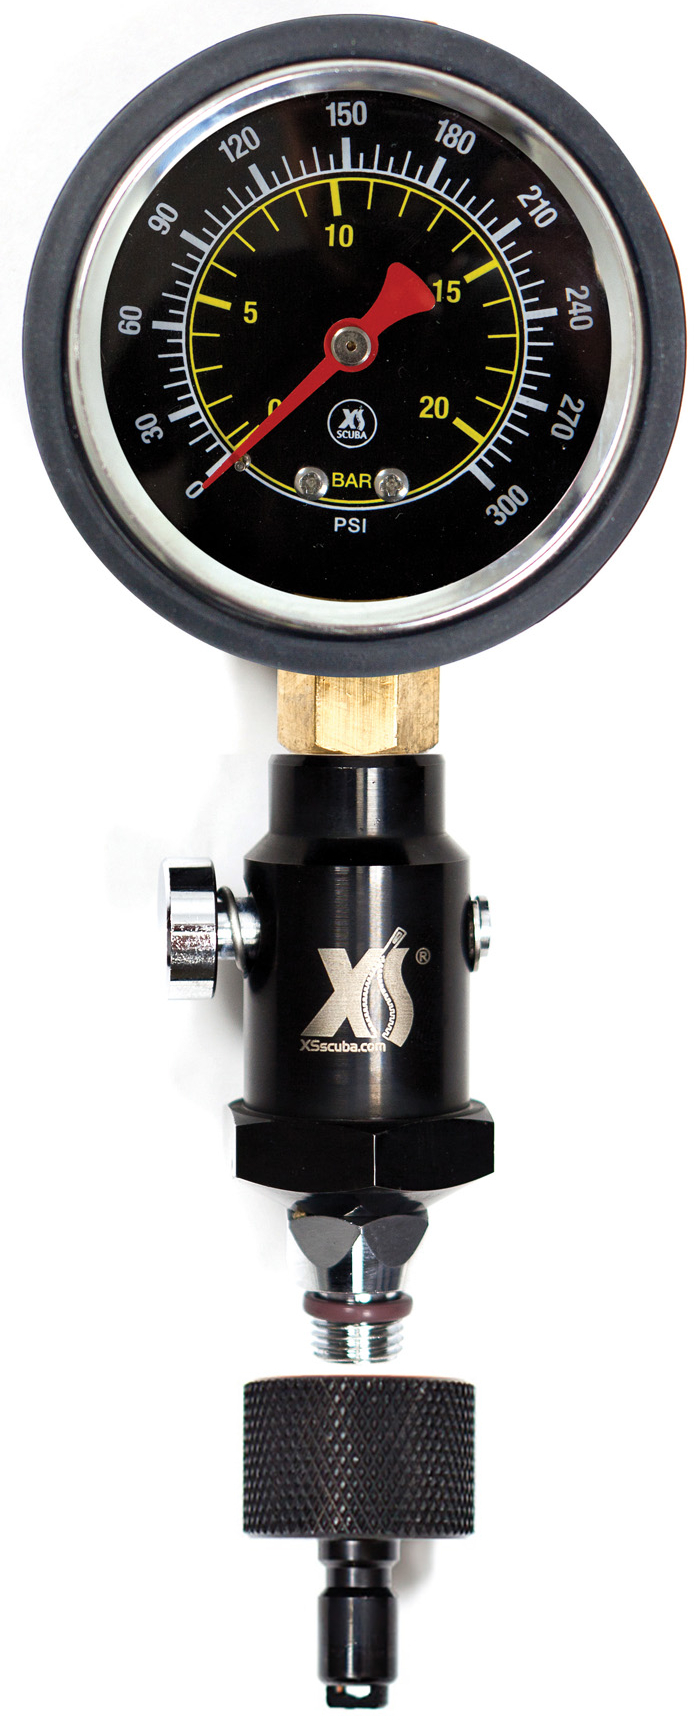 XS Scuba Regulator Intermediate Pressure Test Gauge